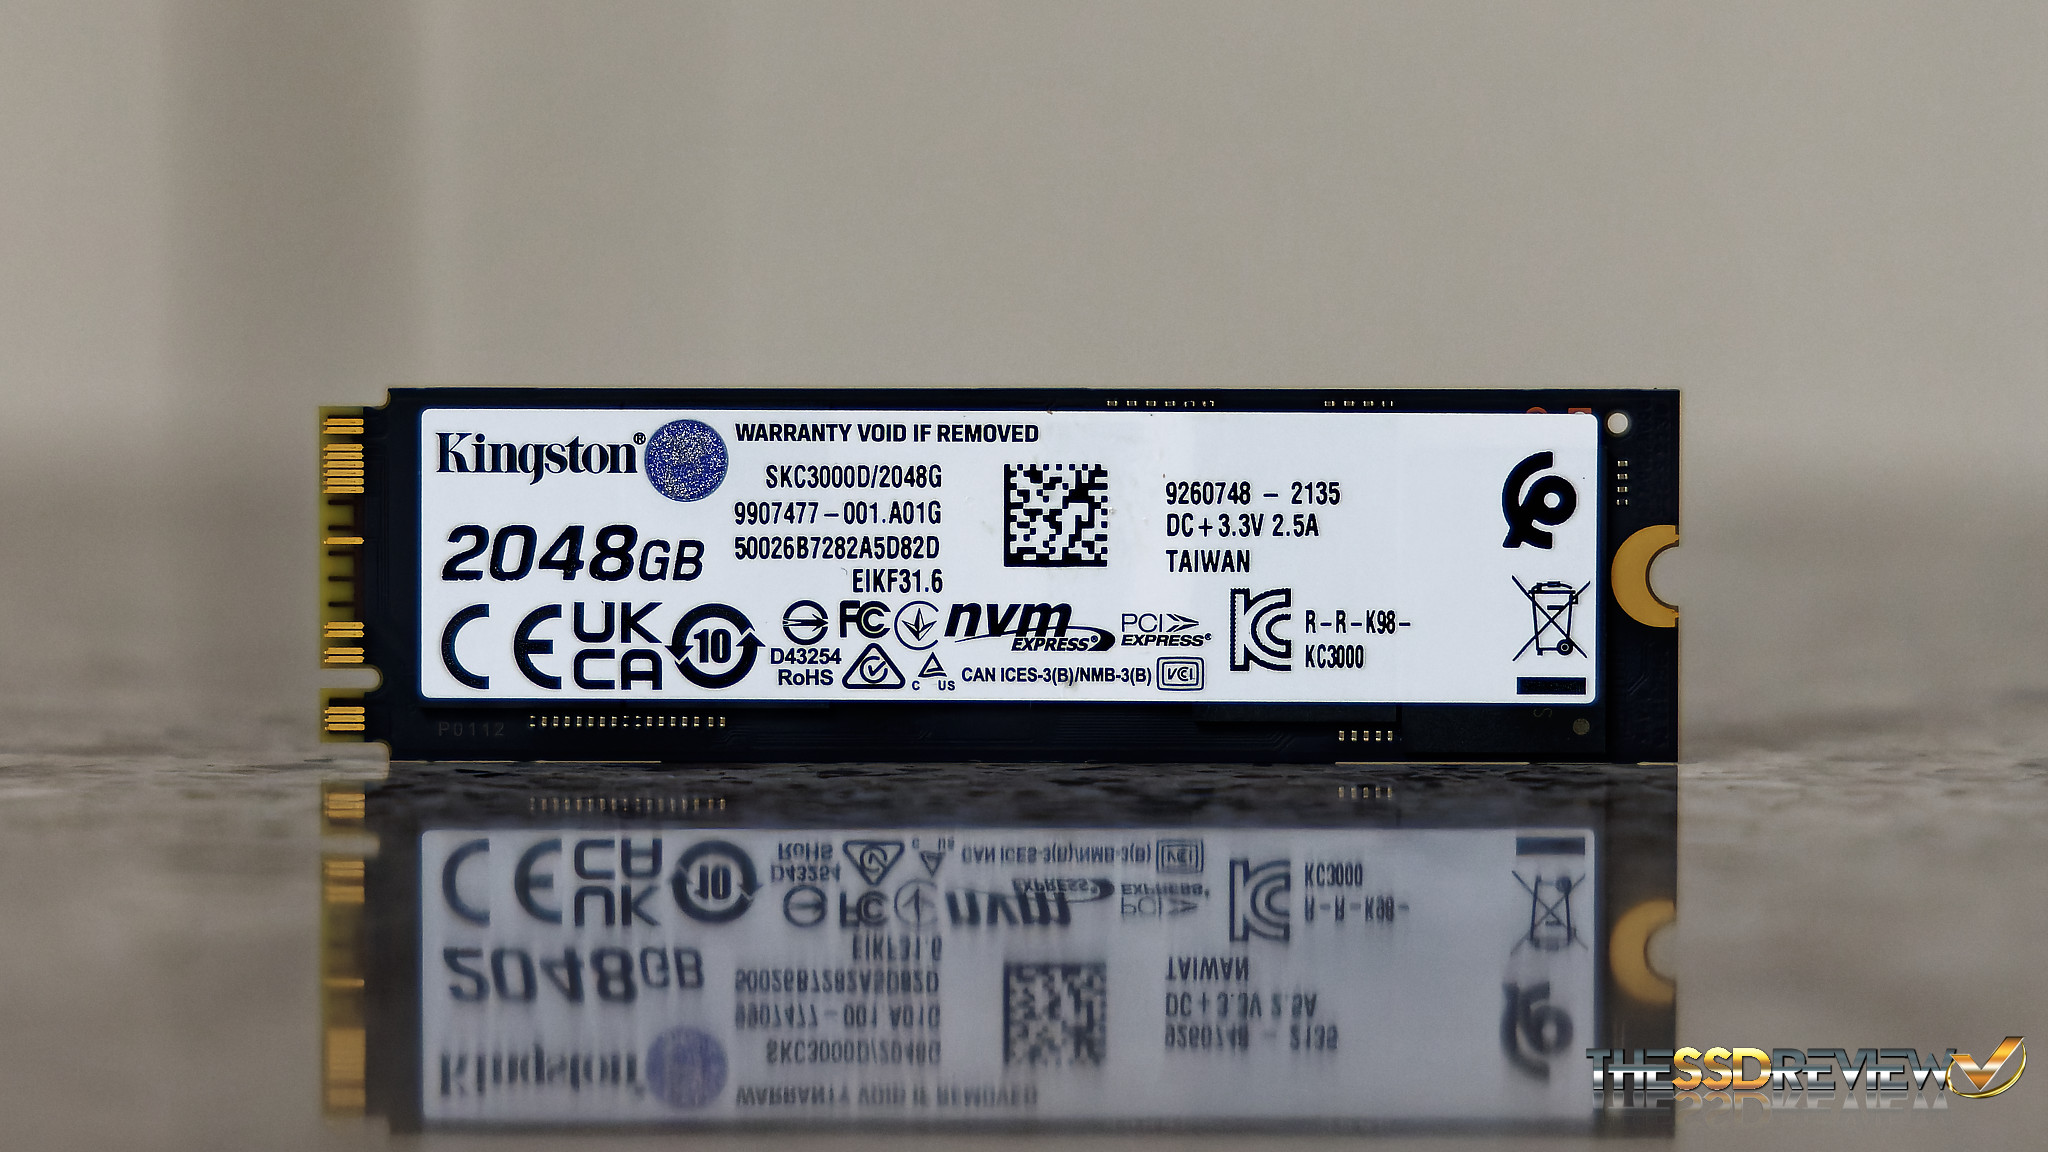 Kingston KC3000 SSD - 2TB - PCIe 4.0 - M.2 2280